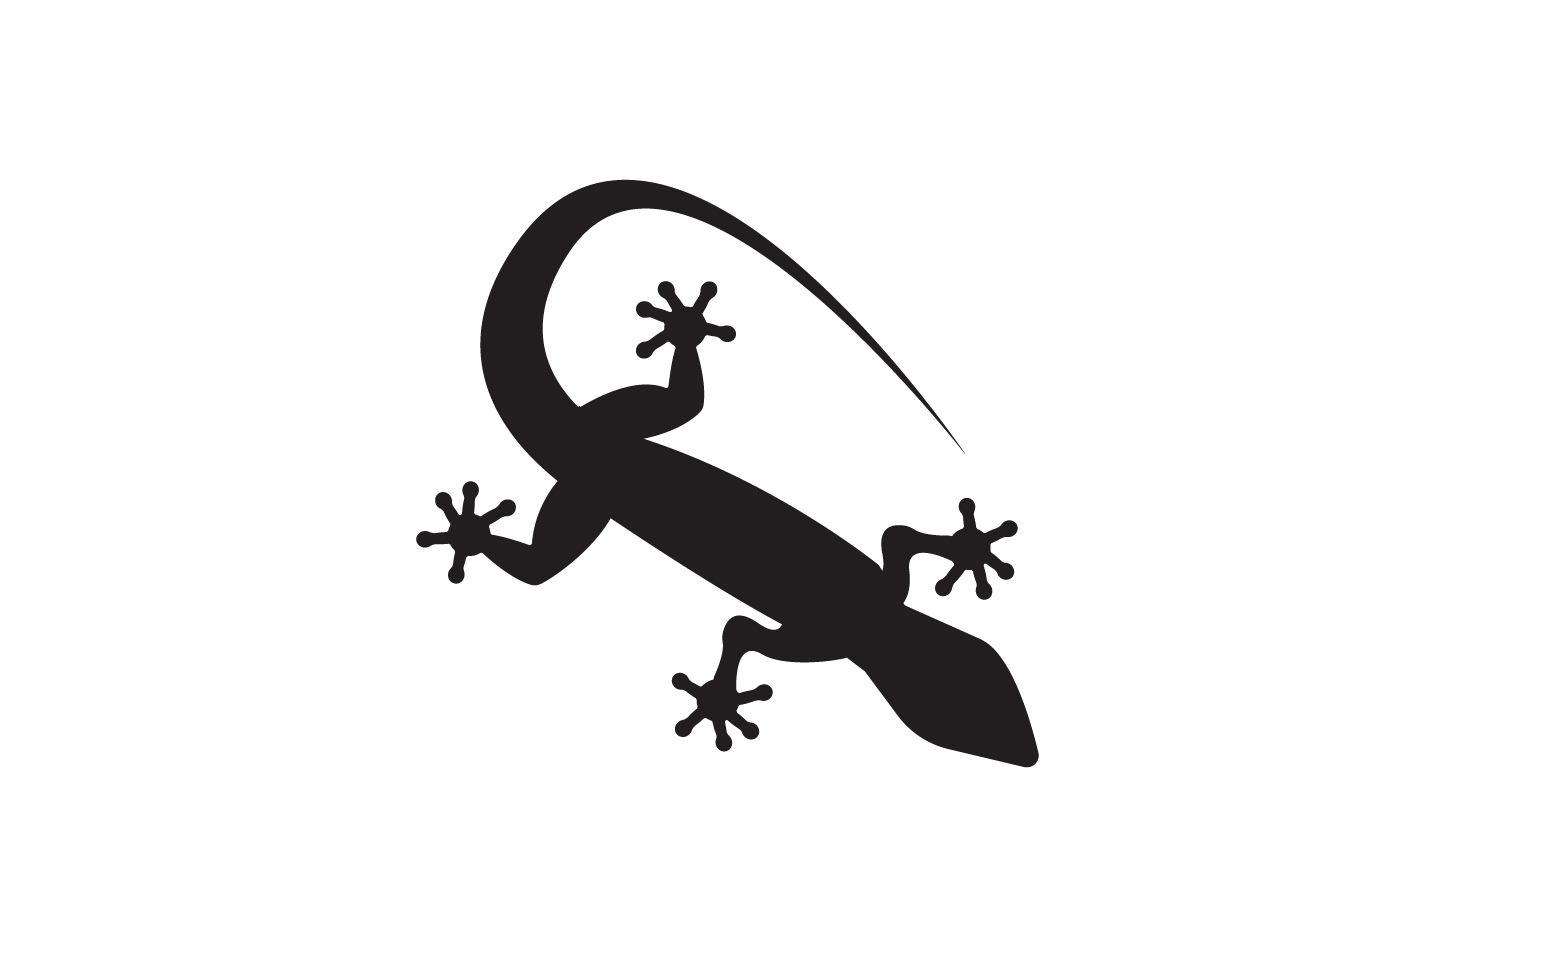 Lizard chameleon home lizard logo v17